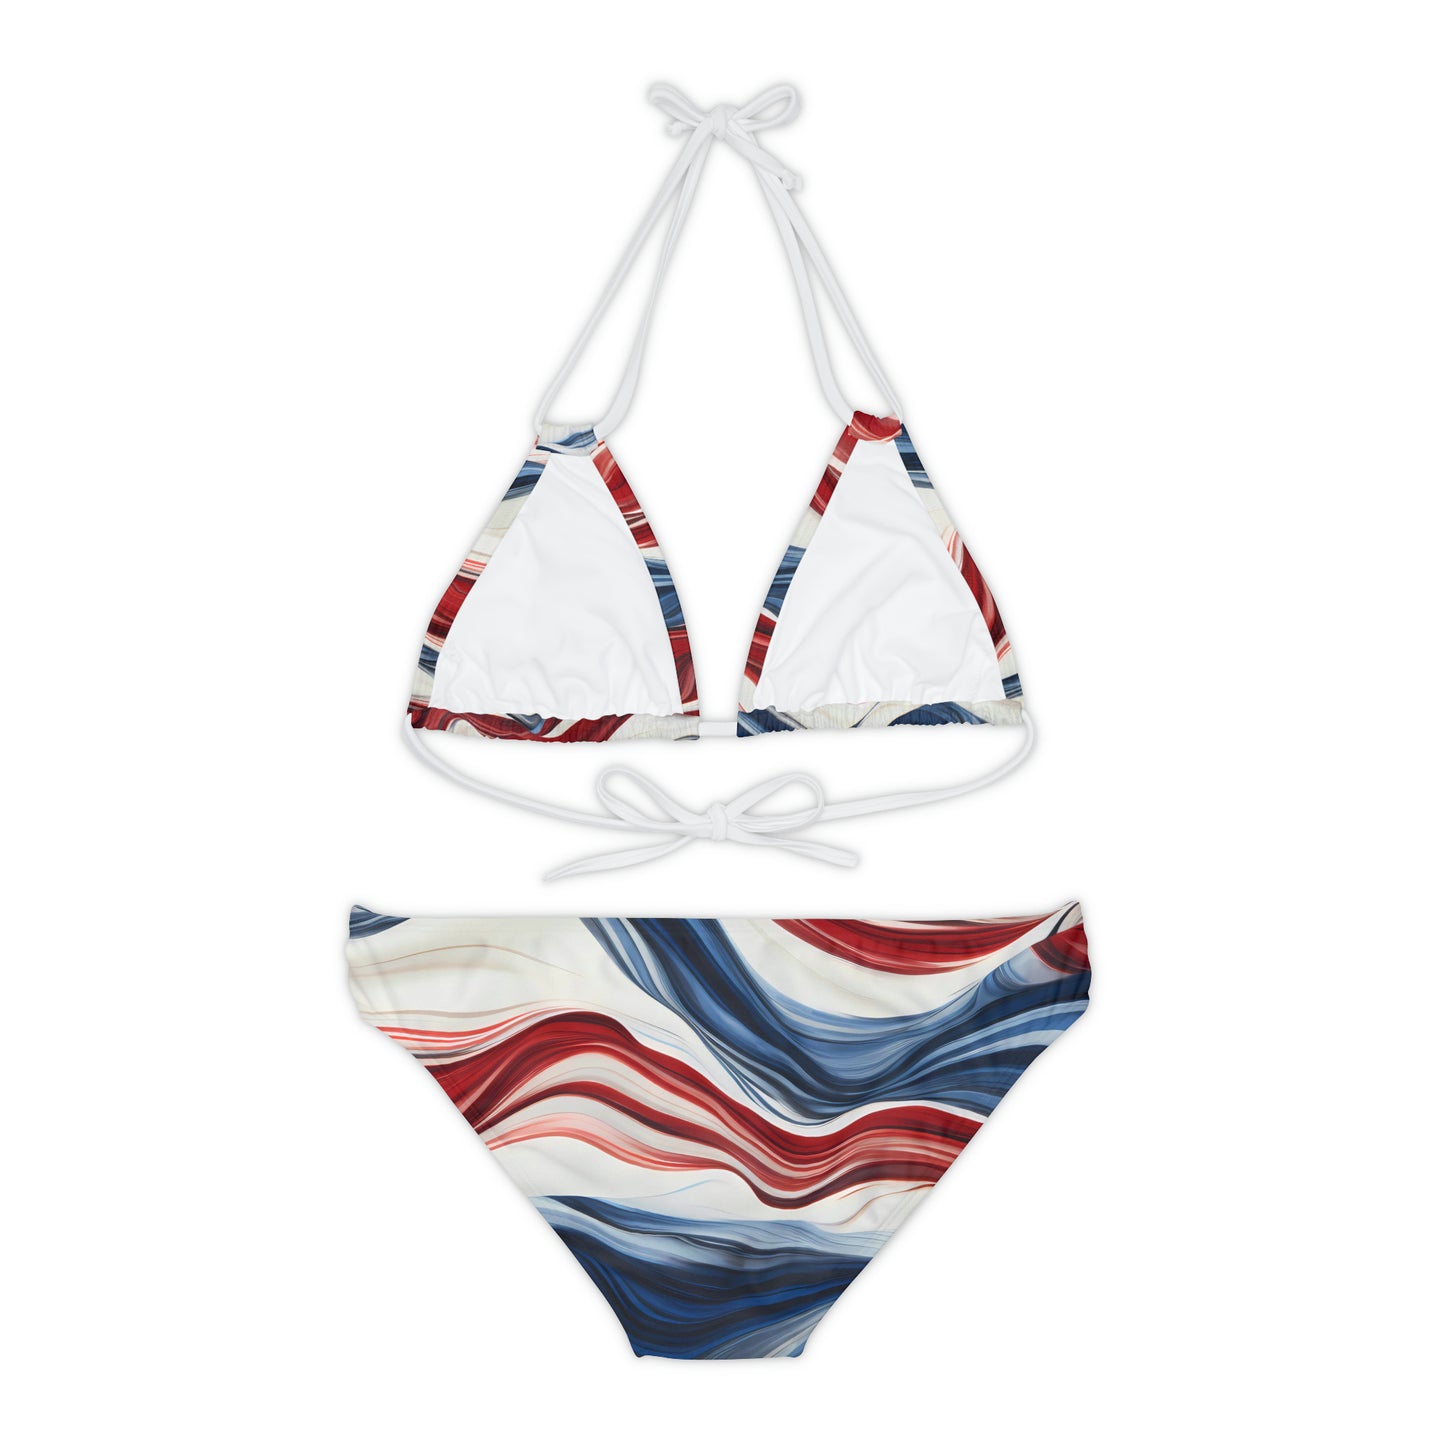 American Flow Strappy Bikini Set